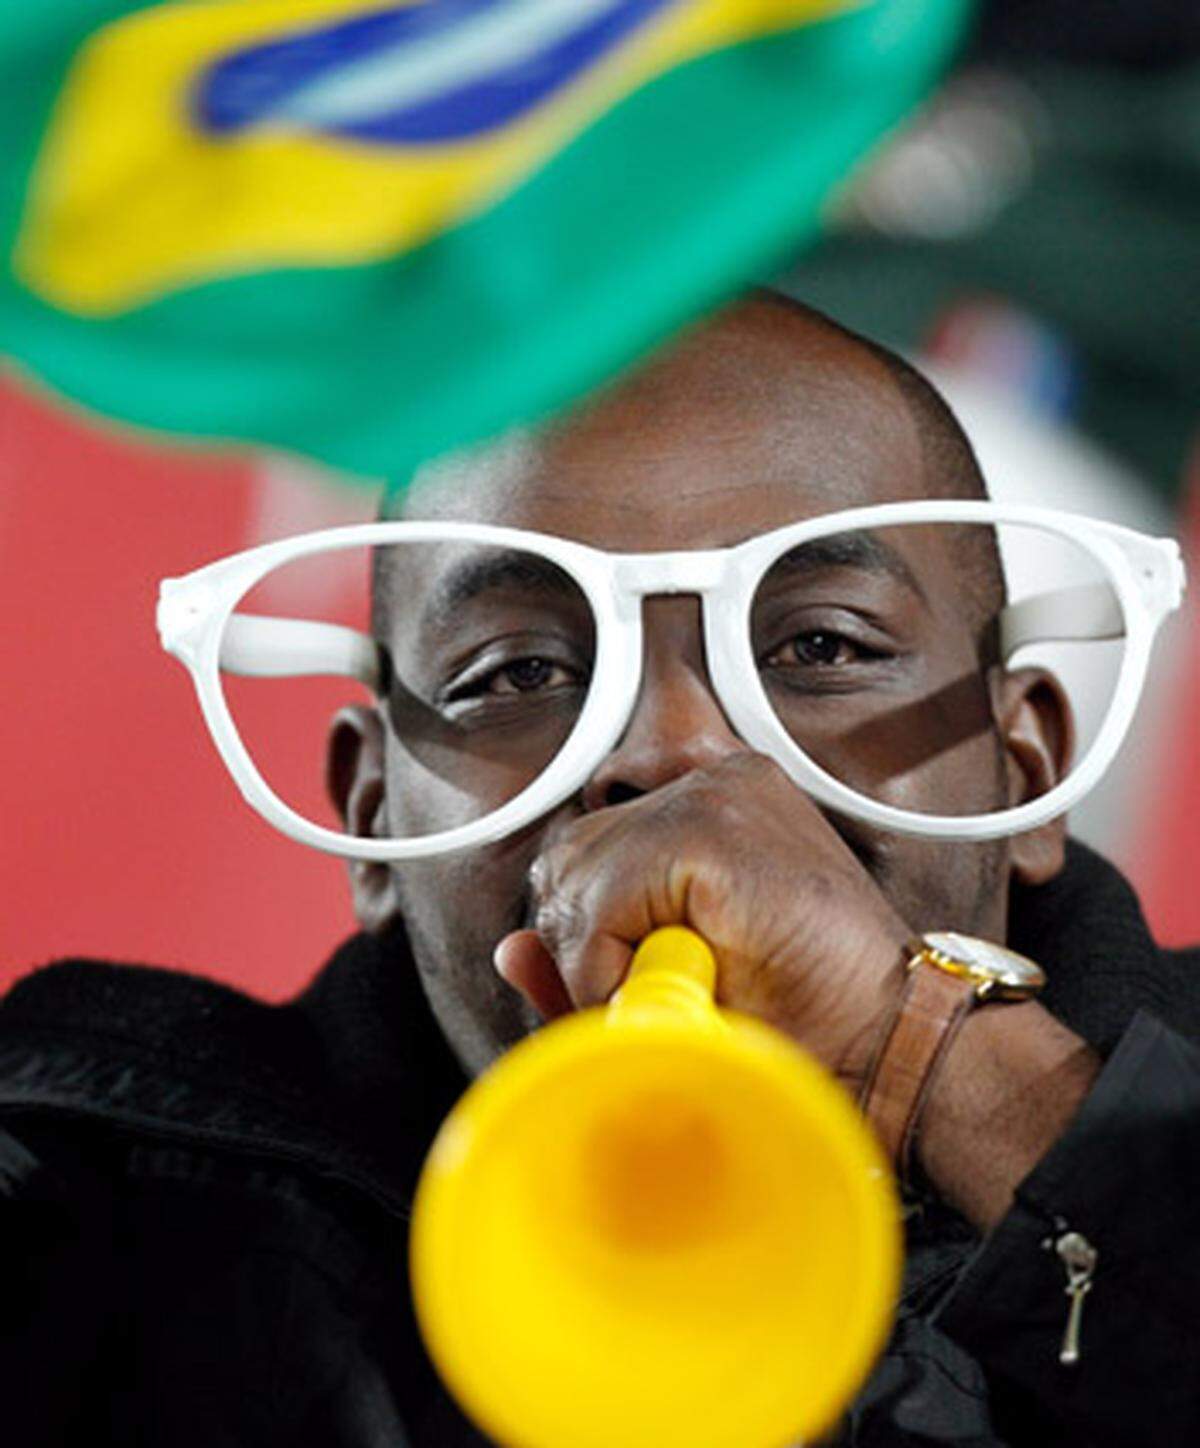 Südafrikaner sehen in der umstrittenen Vuvuzela einen "nationalen Helden". So lautet denn ein Gedicht von Mzwakhe Mbuli, das die "Sunday Times" veröffentlichte. Als "furchteinflößende Kriegslieder, die unsere Feinde nicht verstehen konnten", wird die "Musik" der Vuvuzelas gepriesen. Auch wenn die Fremden sie als "Fluch" verdammten, "bist Du unser Held", so die Ode an die Vuvuzela. Es sei "die Seichtheit ihrer Geister, dieser verdammten Rindviecher", die verhindere zu sehen, dass Vuvuzela "eine Waffe im Krieg ist".